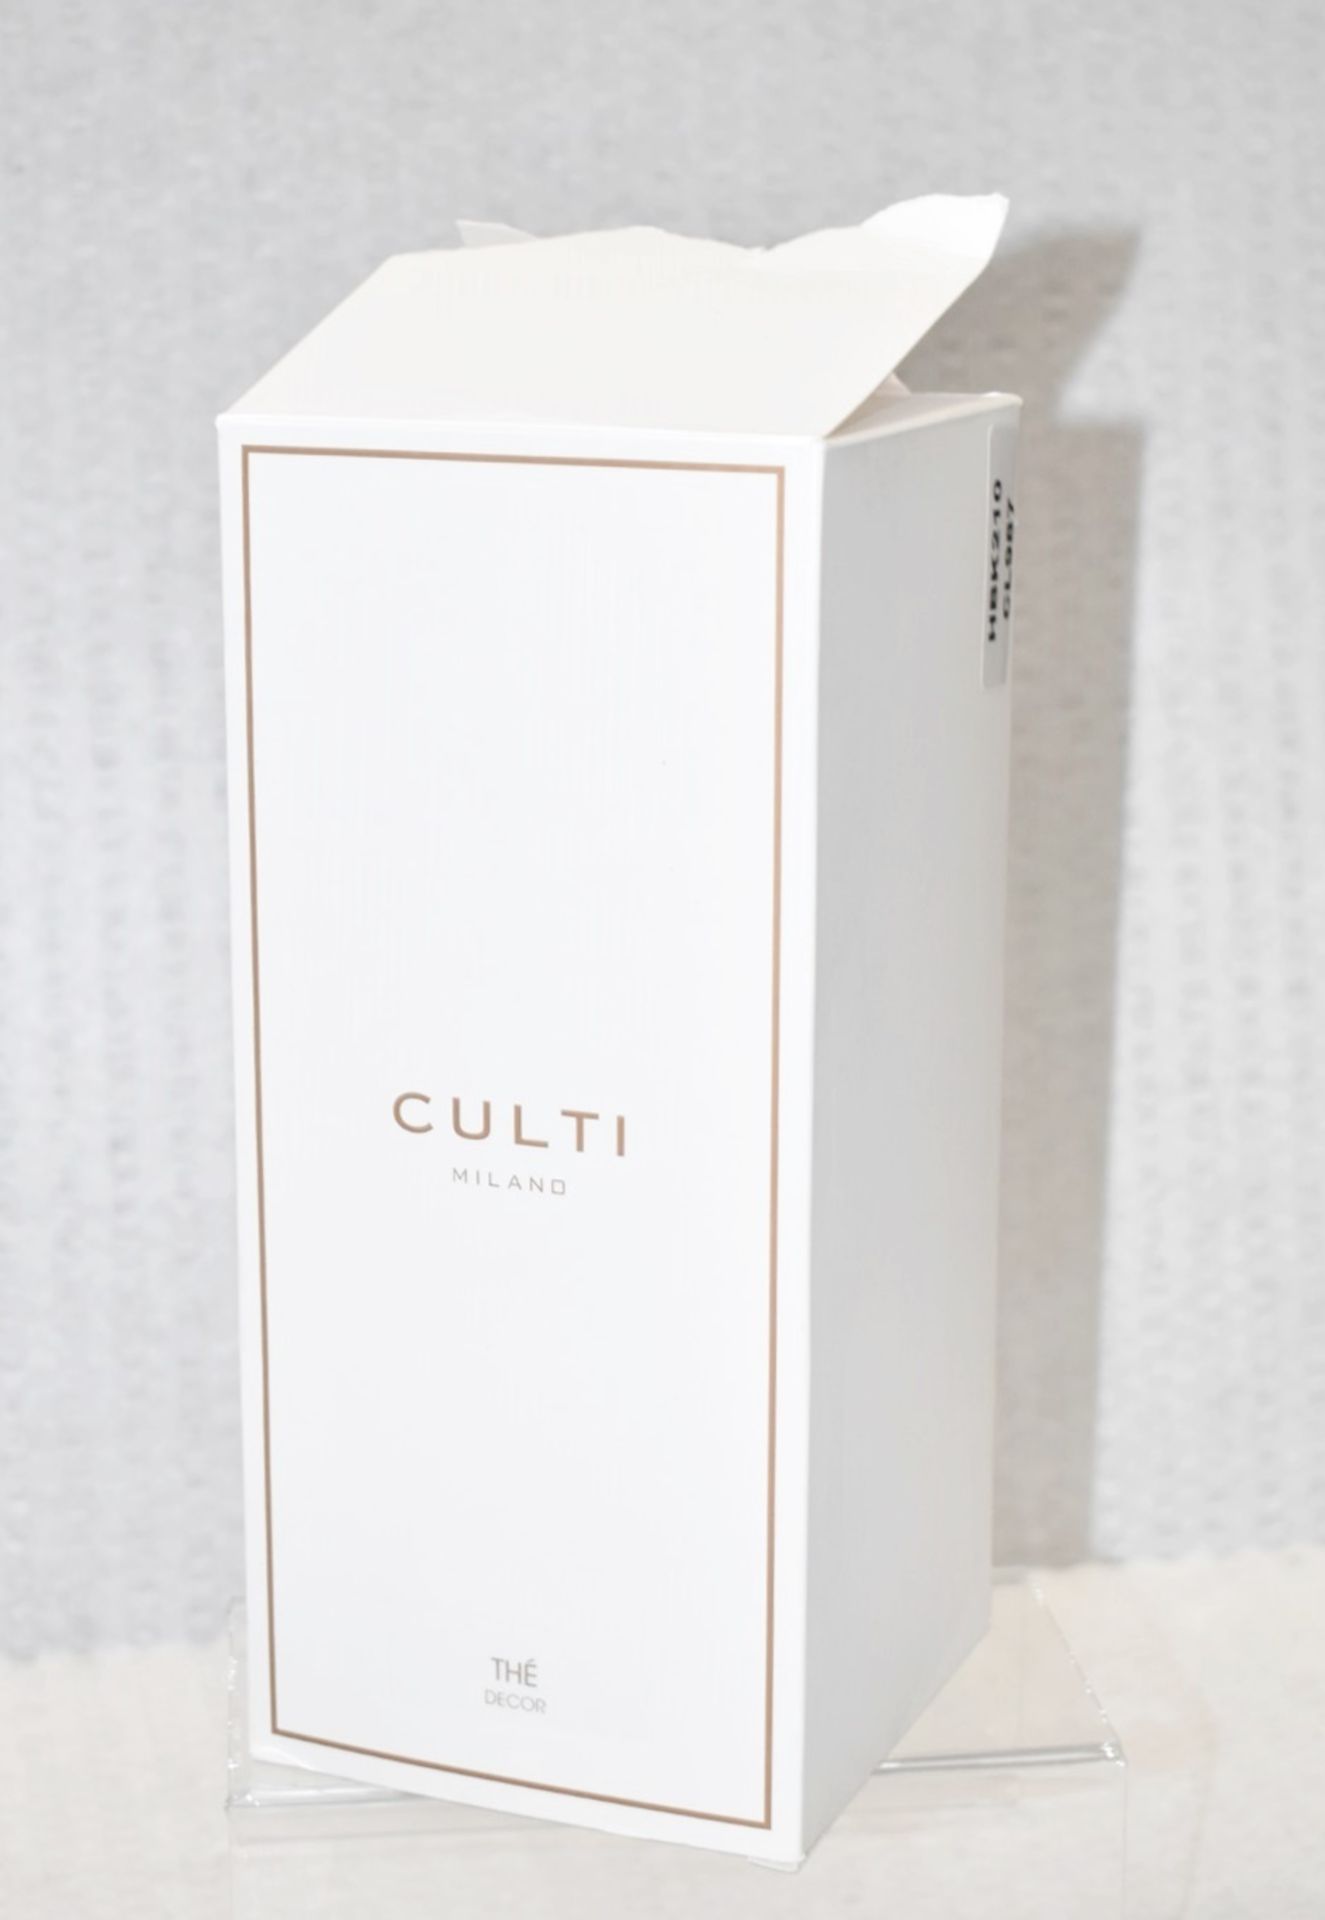 1 x CULTI MILANO Era Décor Diffuser (1L) - Original Price £128.00 - Unused Boxed Stock - Image 5 of 10